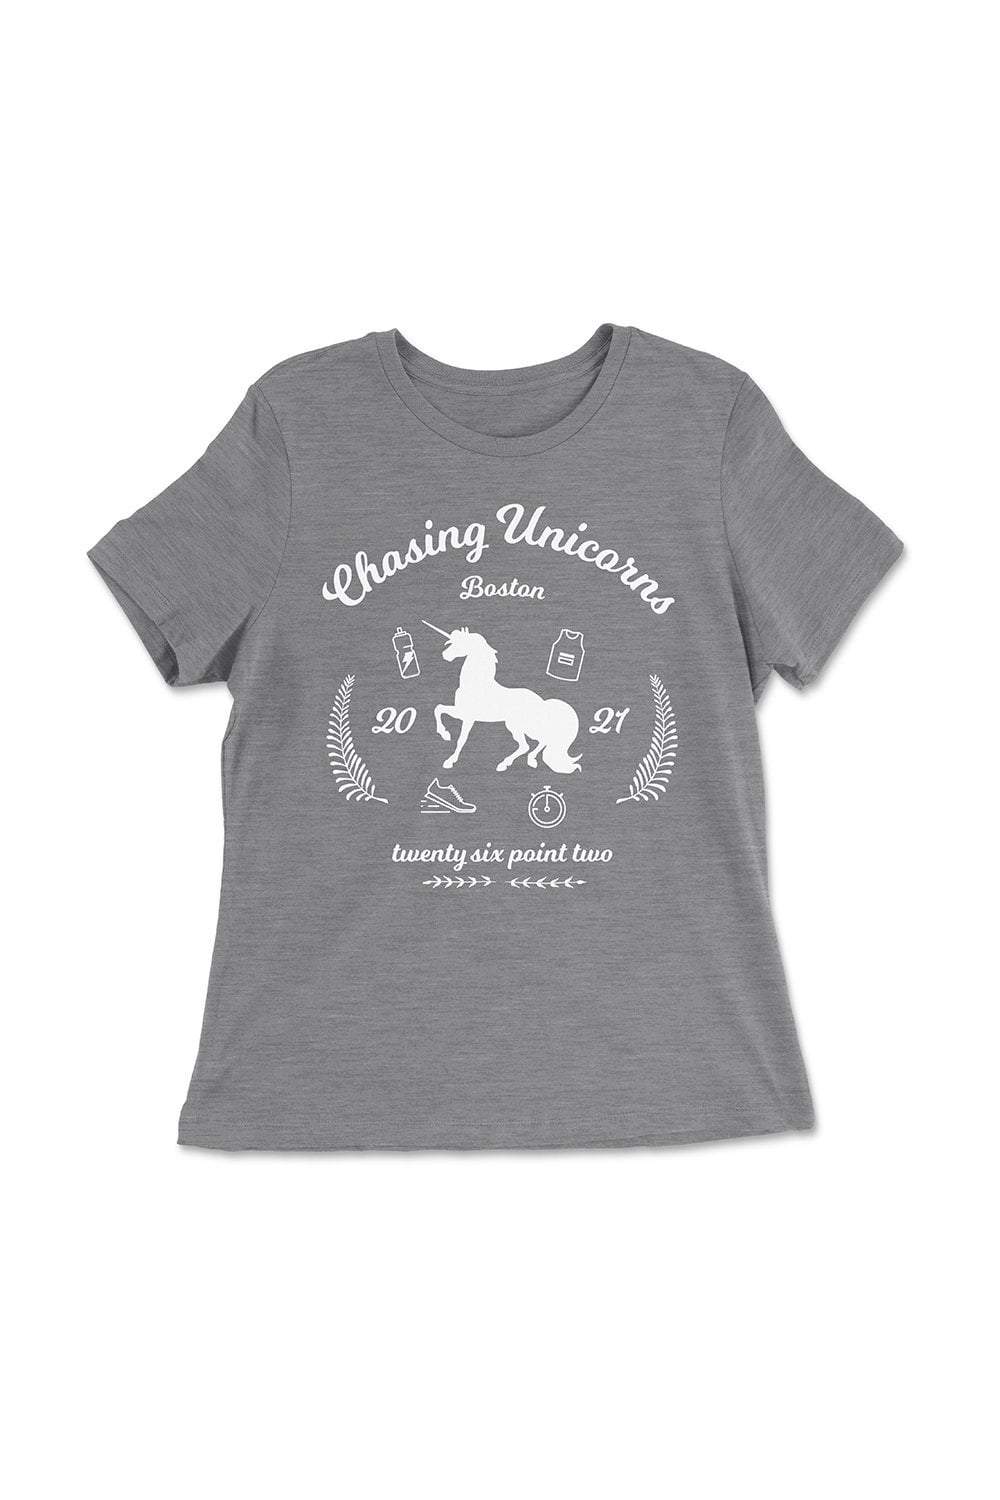 Sarah Marie Design Studio Chasing Unicorns Women's T-shirt